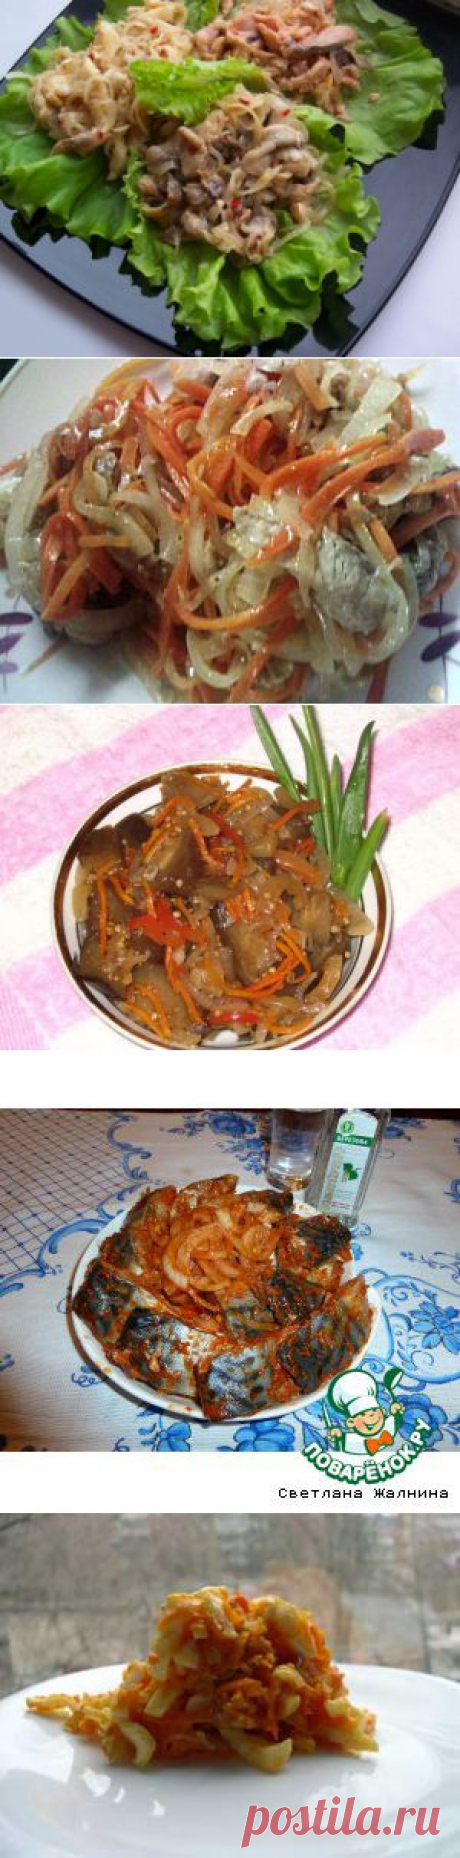 Корейские блюда | Записи в рубрике Корейские блюда | Записная книжка Кирми